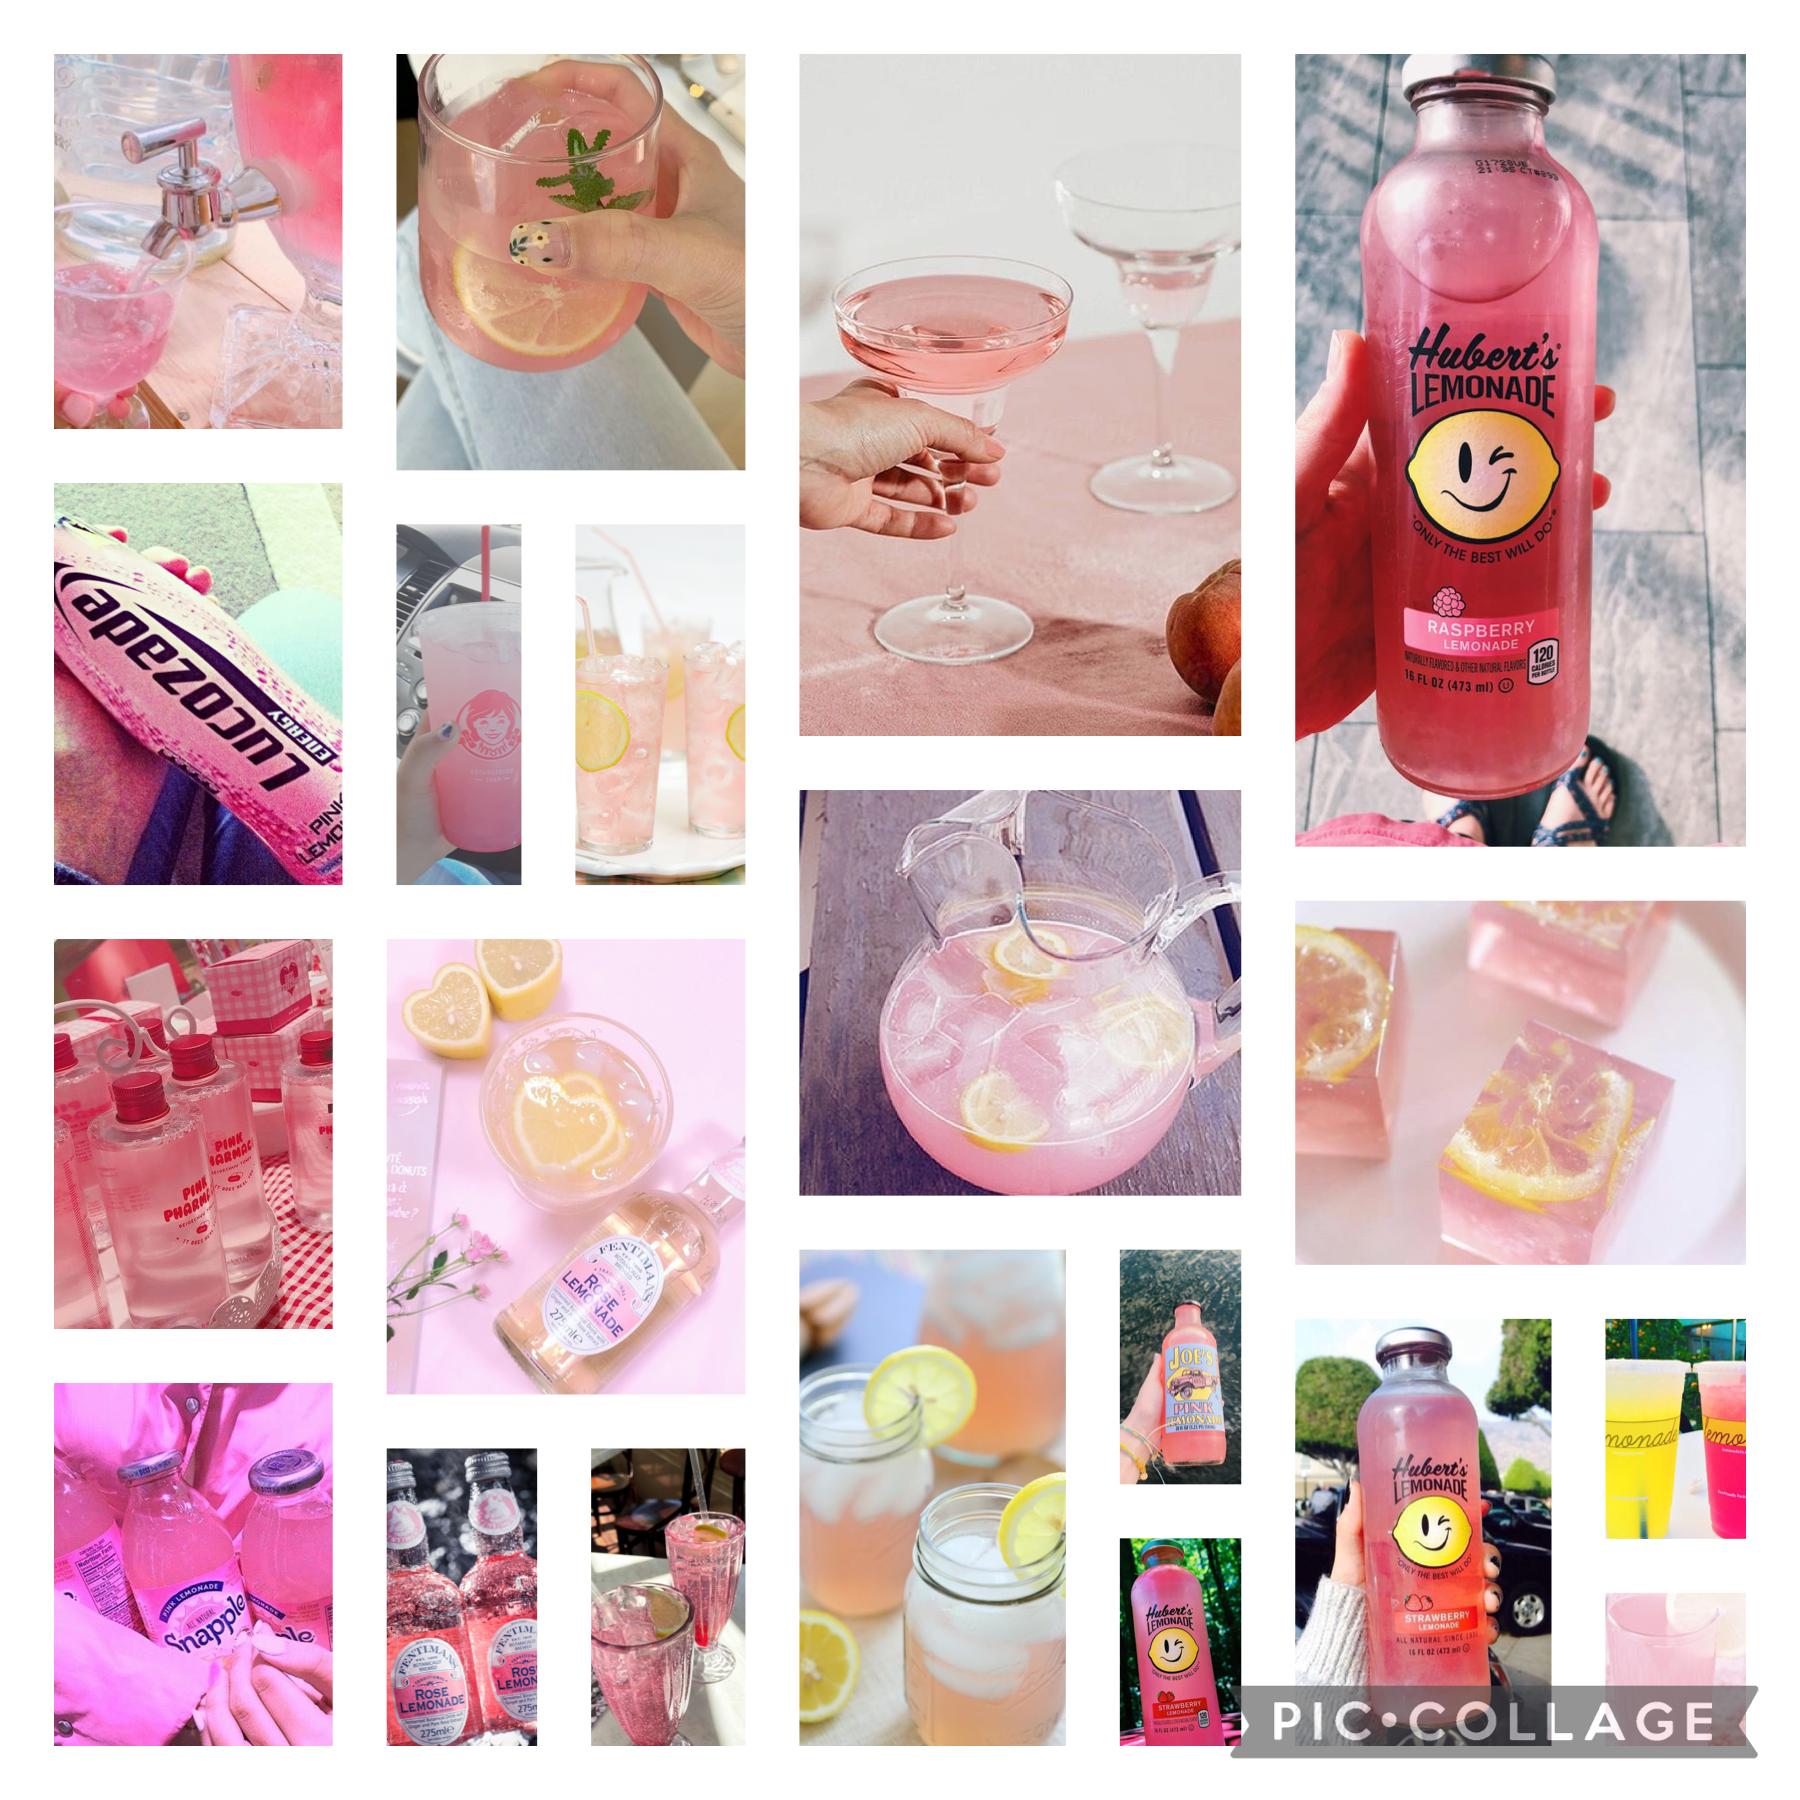 Pink lemonade asthetic!!